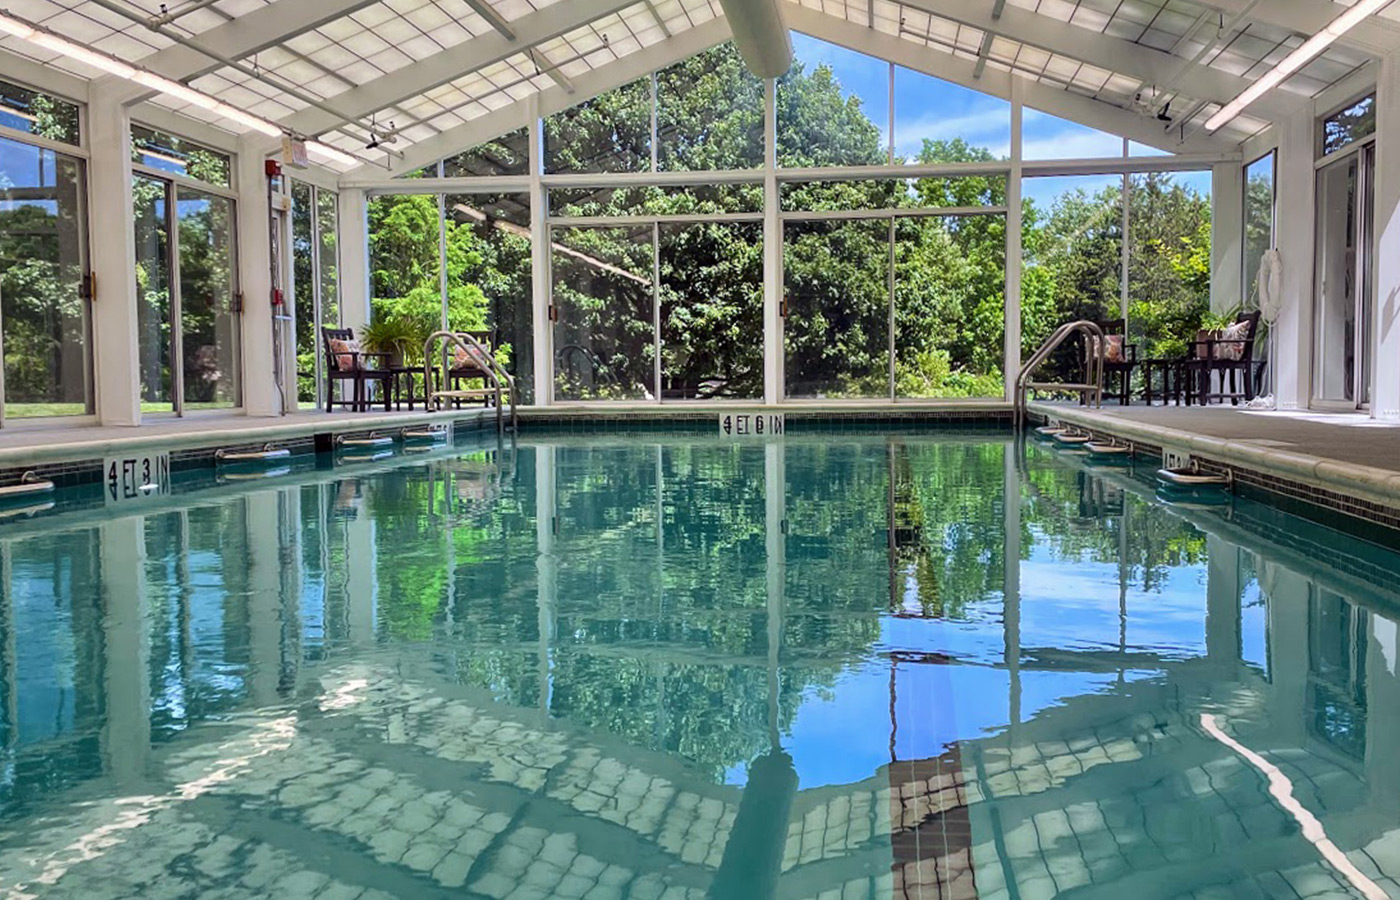 An indoor pool.